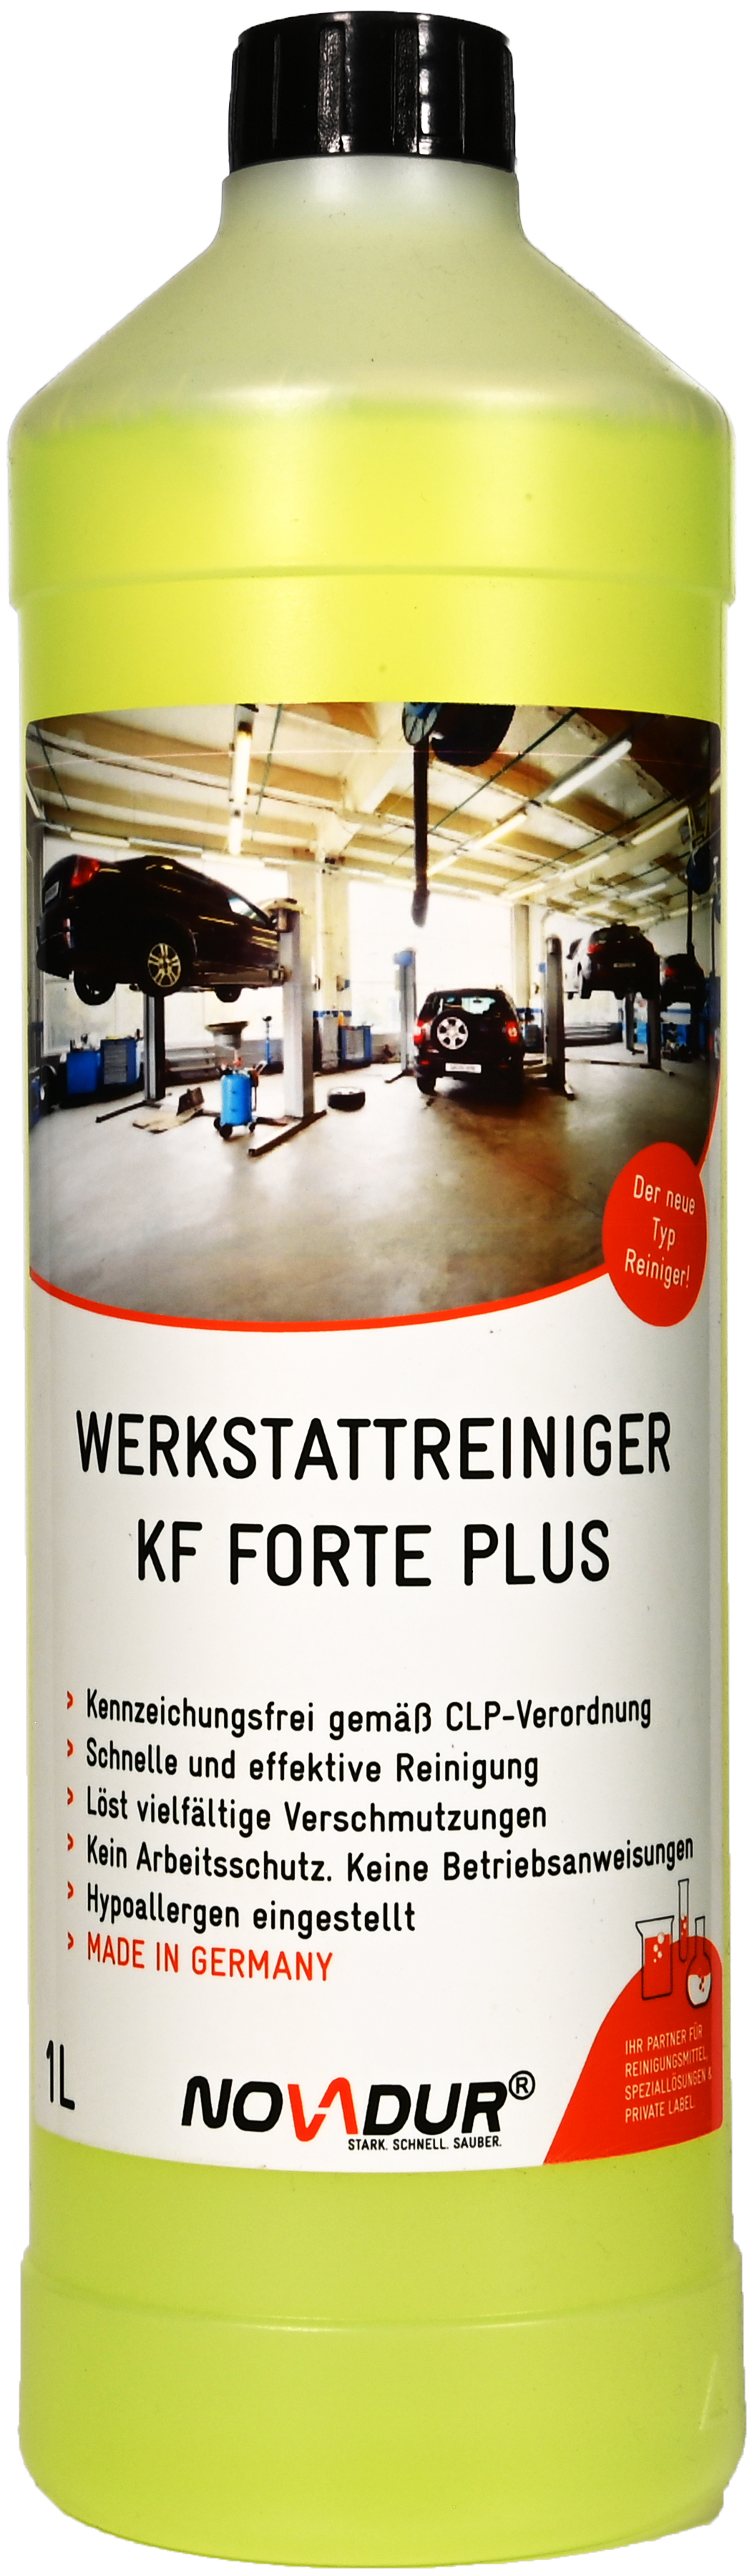 Werkstattreiniger KF Forte PLUS